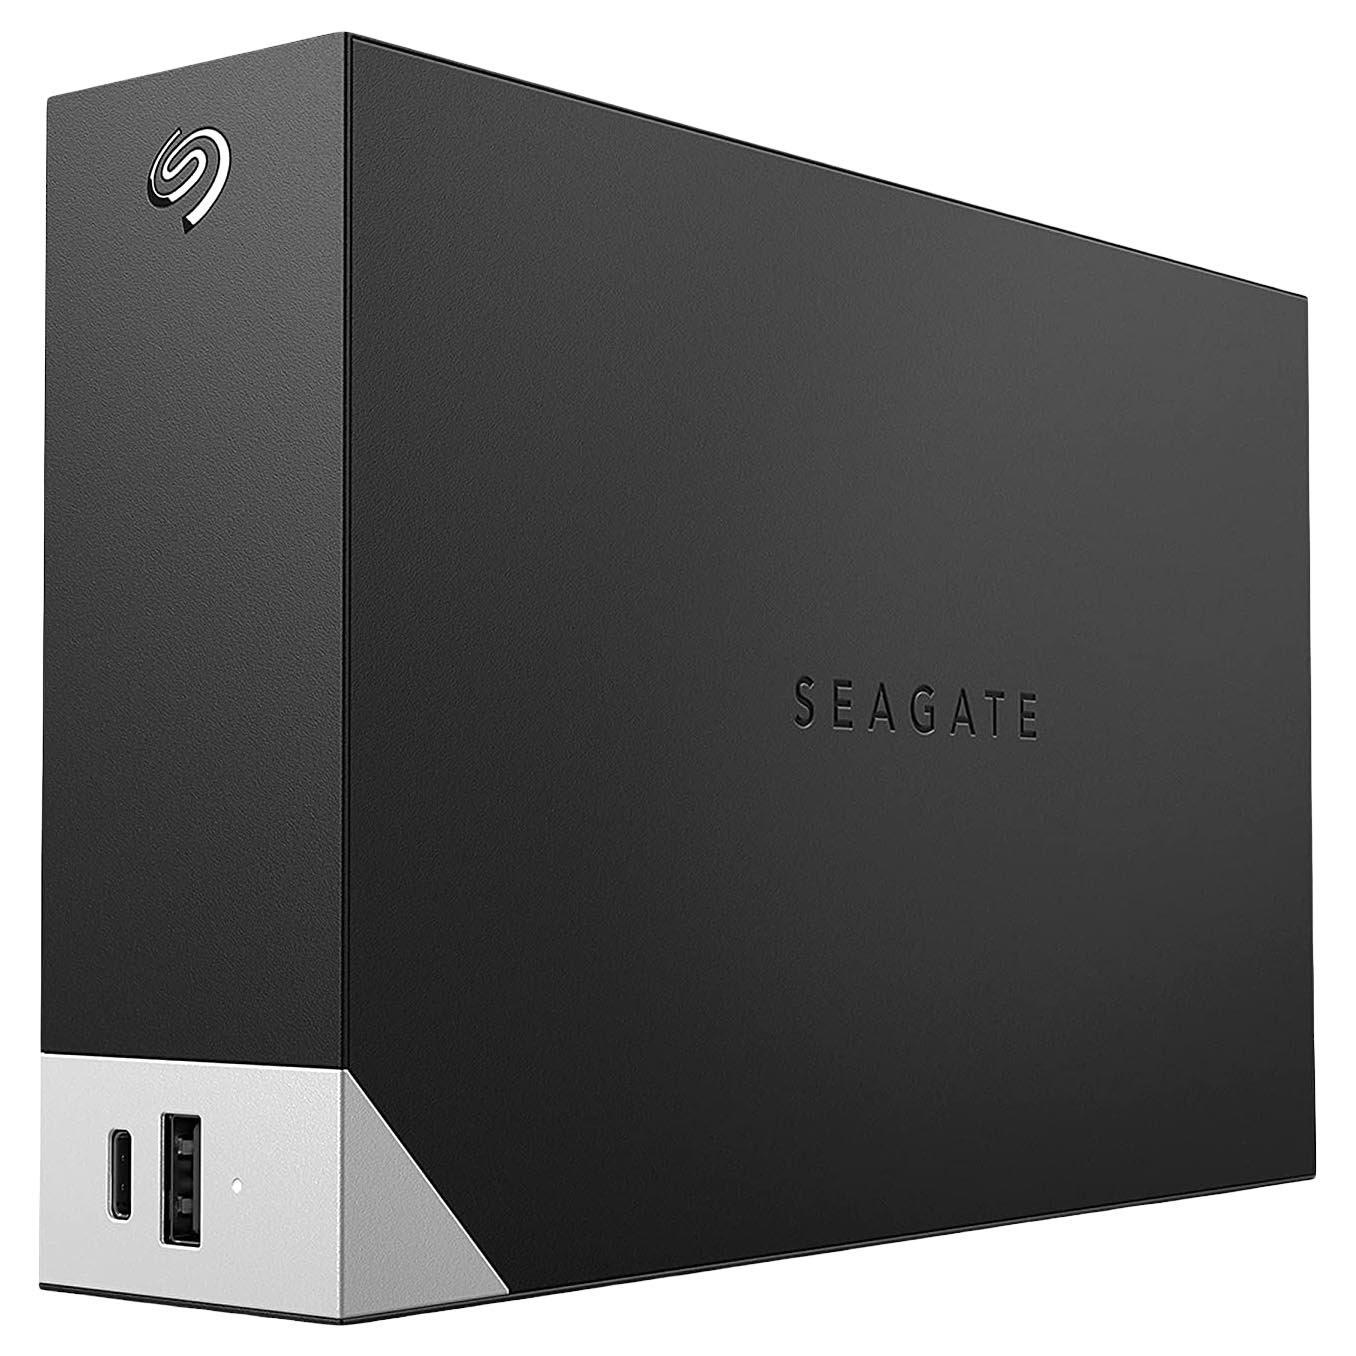 Внешний жесткий диск Seagate One Touch, STLC18000400, 18Тб, 3.5 внешний жесткий диск 2 5 5 tb usb 3 0 seagate one touch stkc5000400 черный